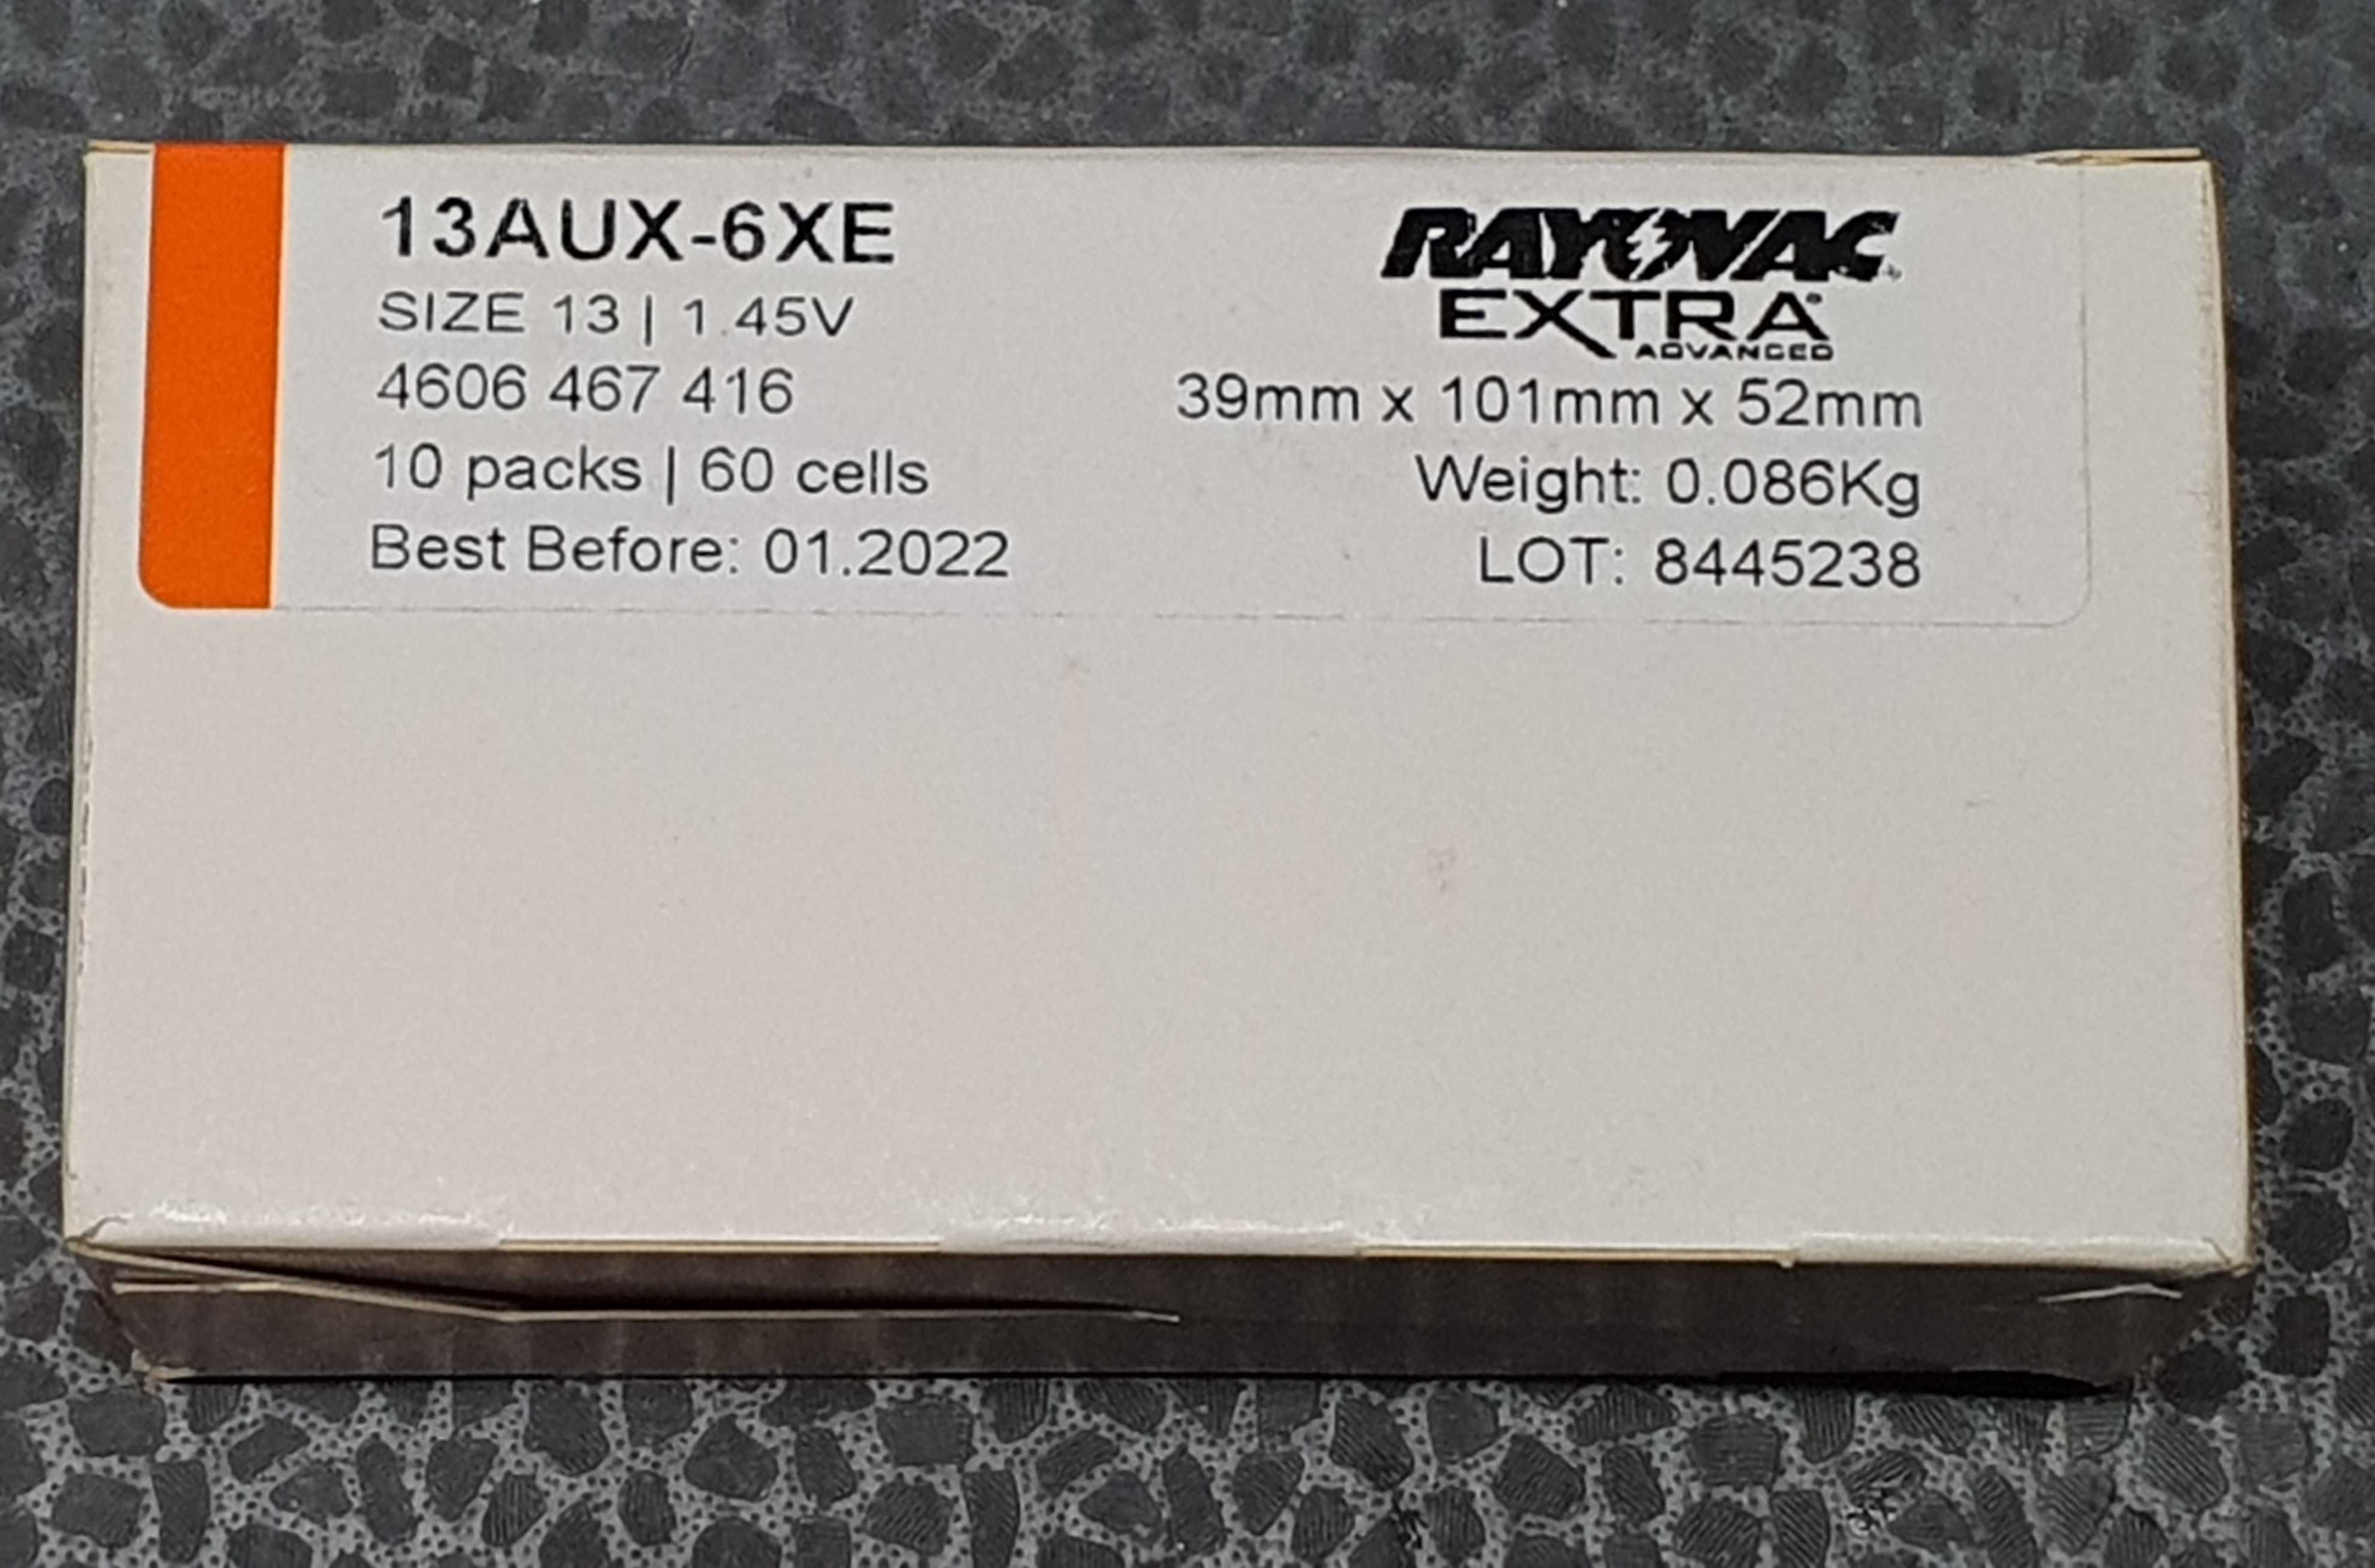 Baterie słuchowe bateria słuchowa RAYOVAC PR48 13AUX-6XE 60 szt.